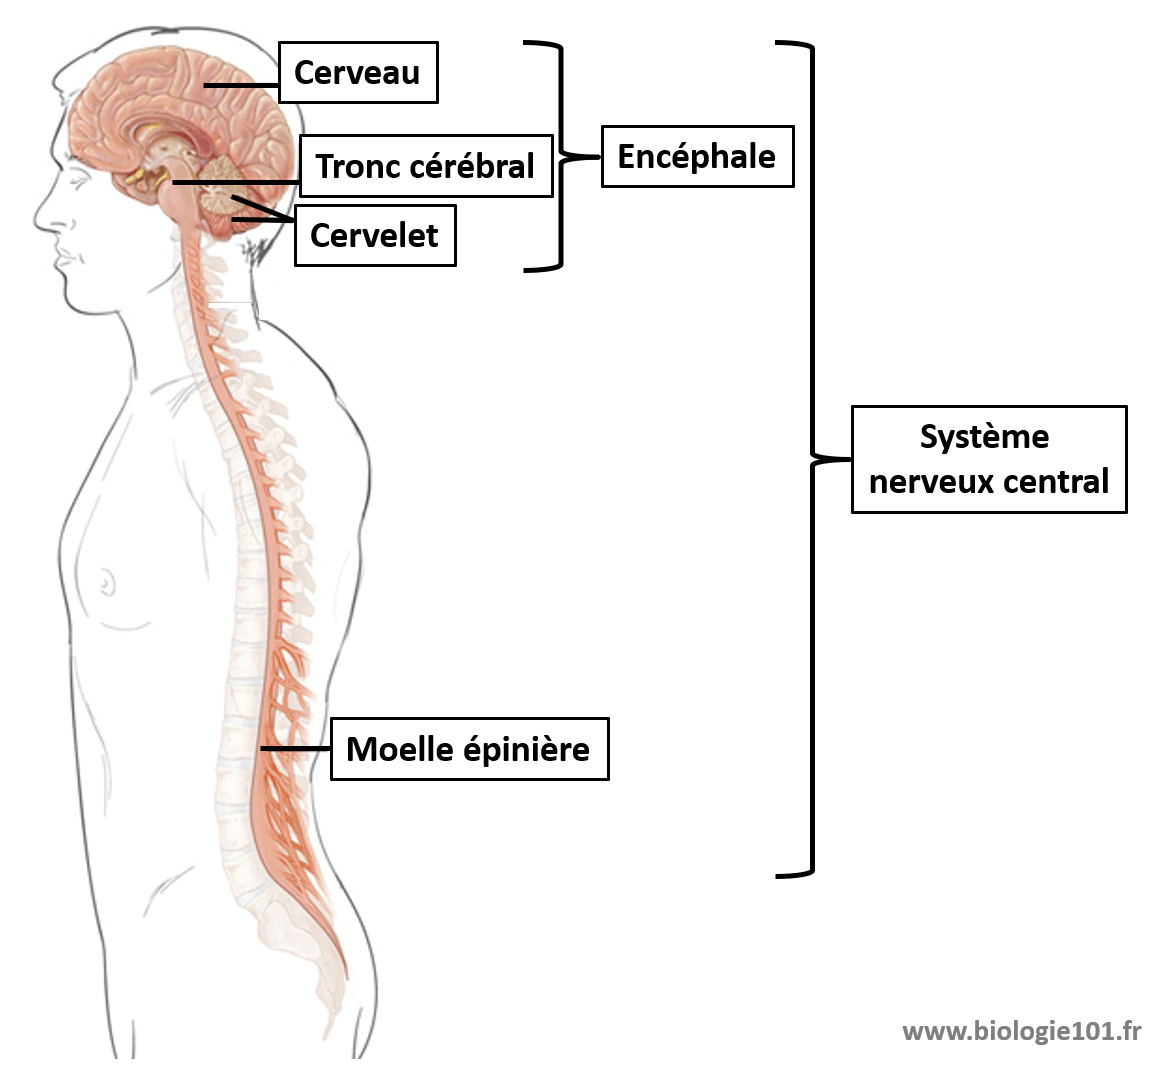 La moelle épinière fait partie du système nerveux central. La moelle épinière est le centre nerveux impliqué dans les mouvements invonlontaires, les réflexes myotatiques.